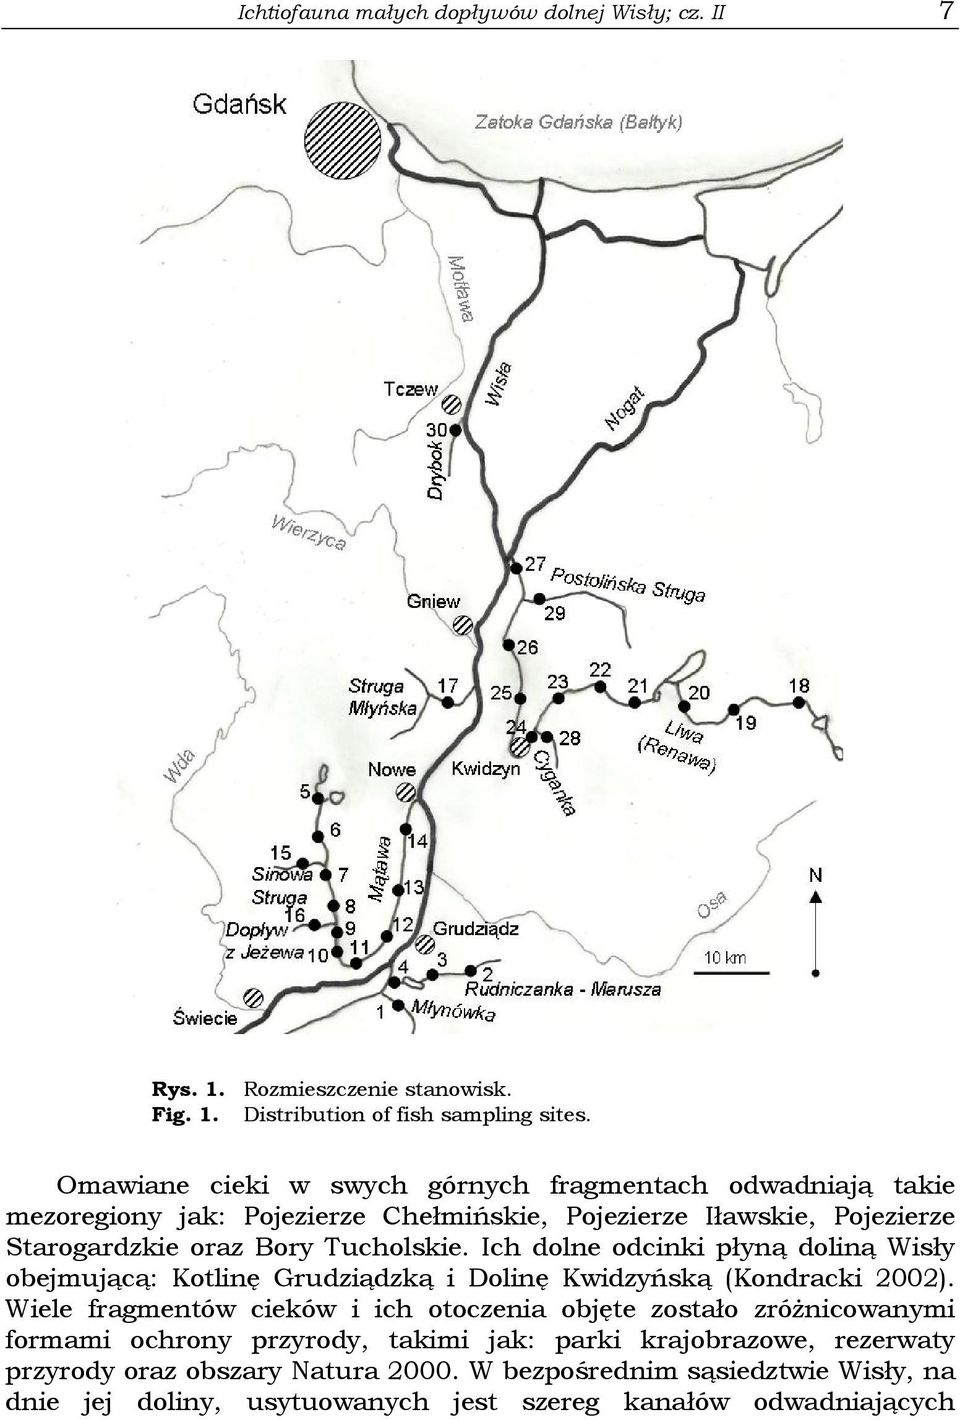 Ich dolne odcinki płyną doliną Wisły obejmującą: Kotlinę Grudziądzką i Dolinę Kwidzyńską (Kondracki 2002).